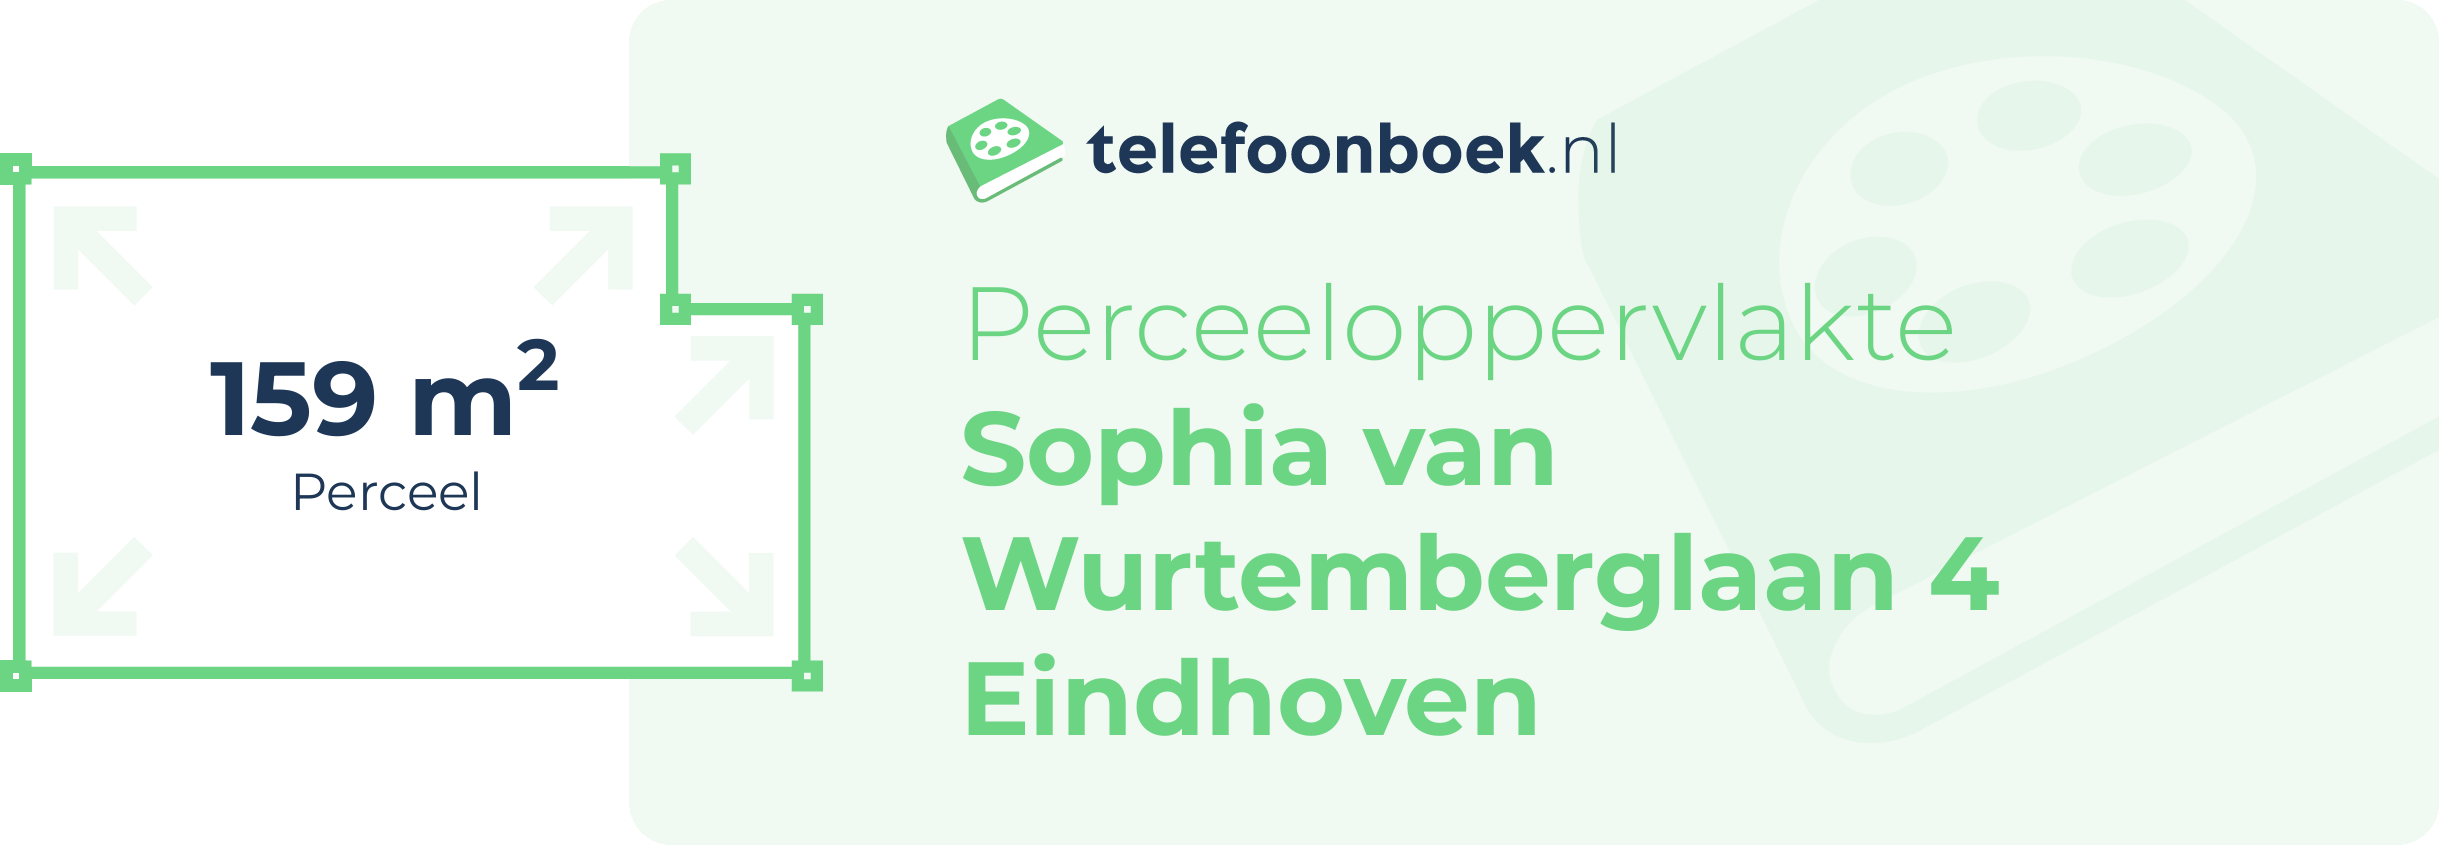 Perceeloppervlakte Sophia Van Wurtemberglaan 4 Eindhoven